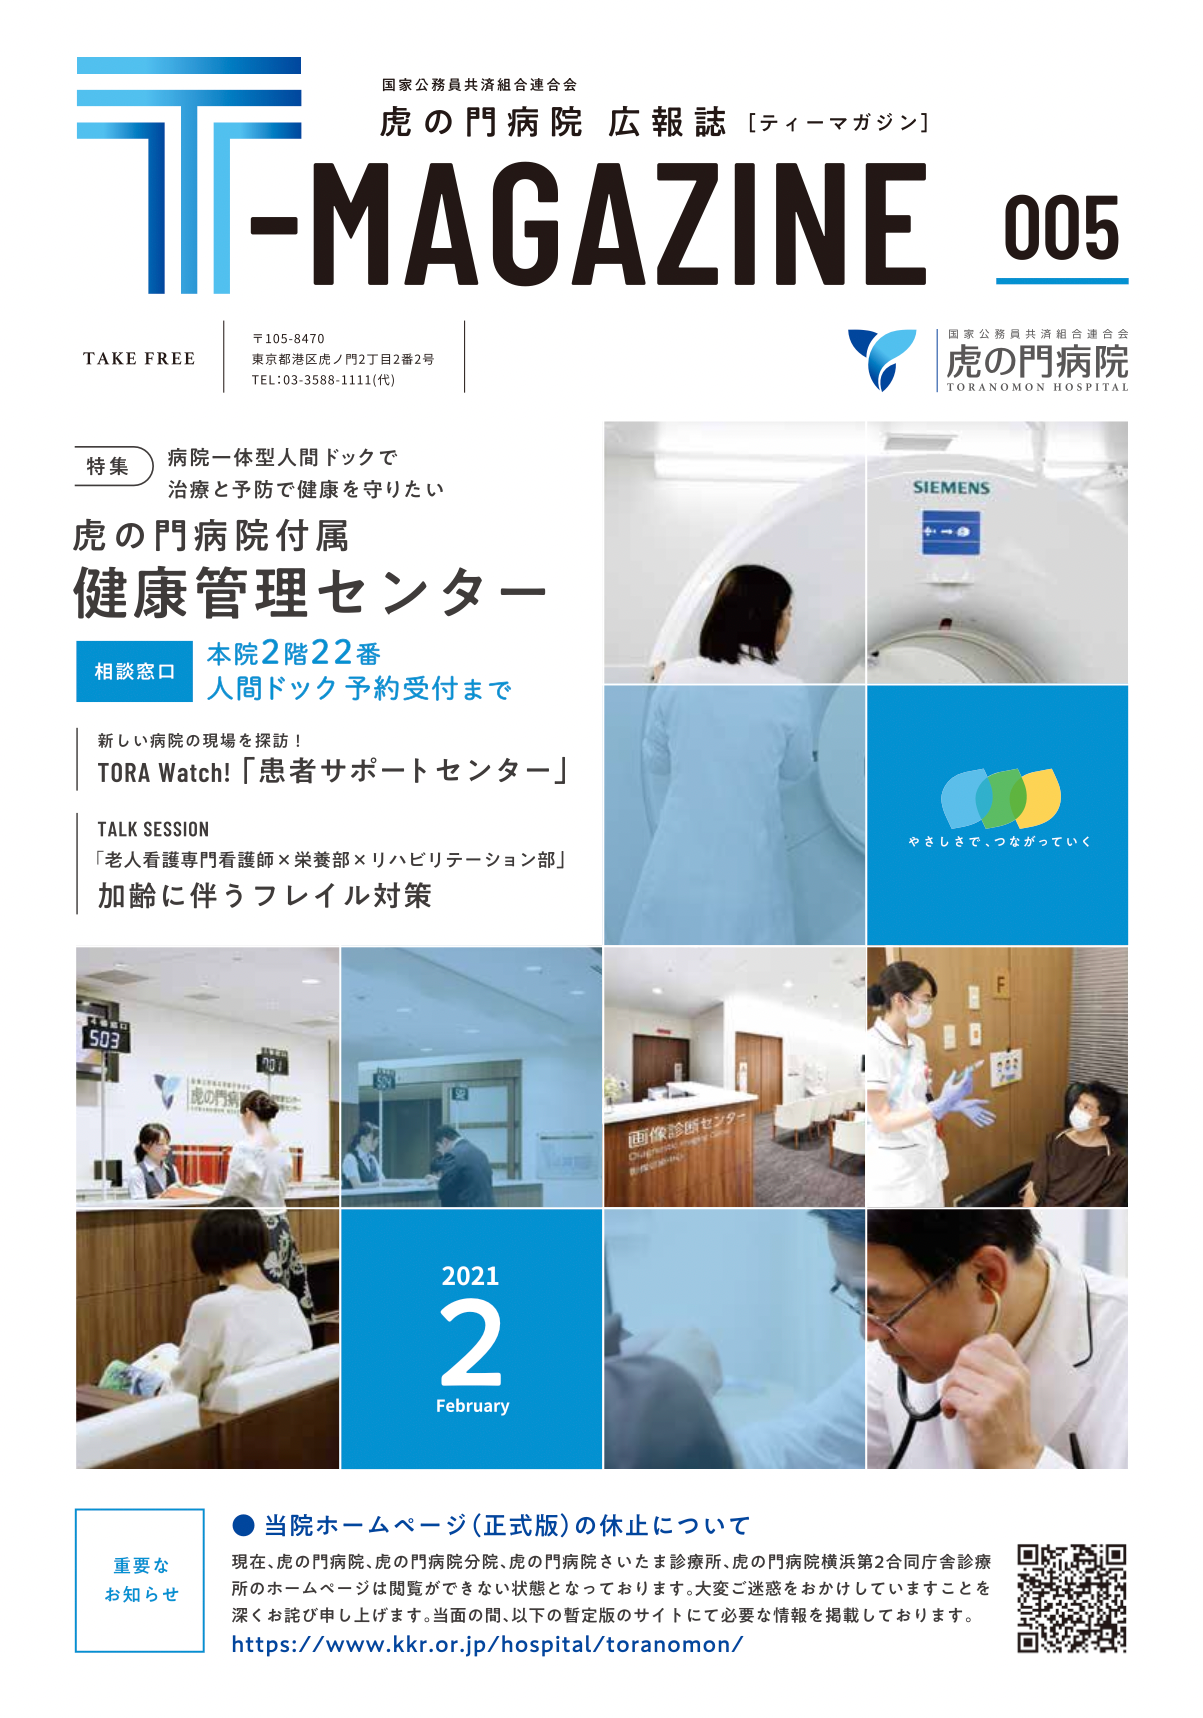 虎の門病院広報誌「T-MAGAZINE」vol.5